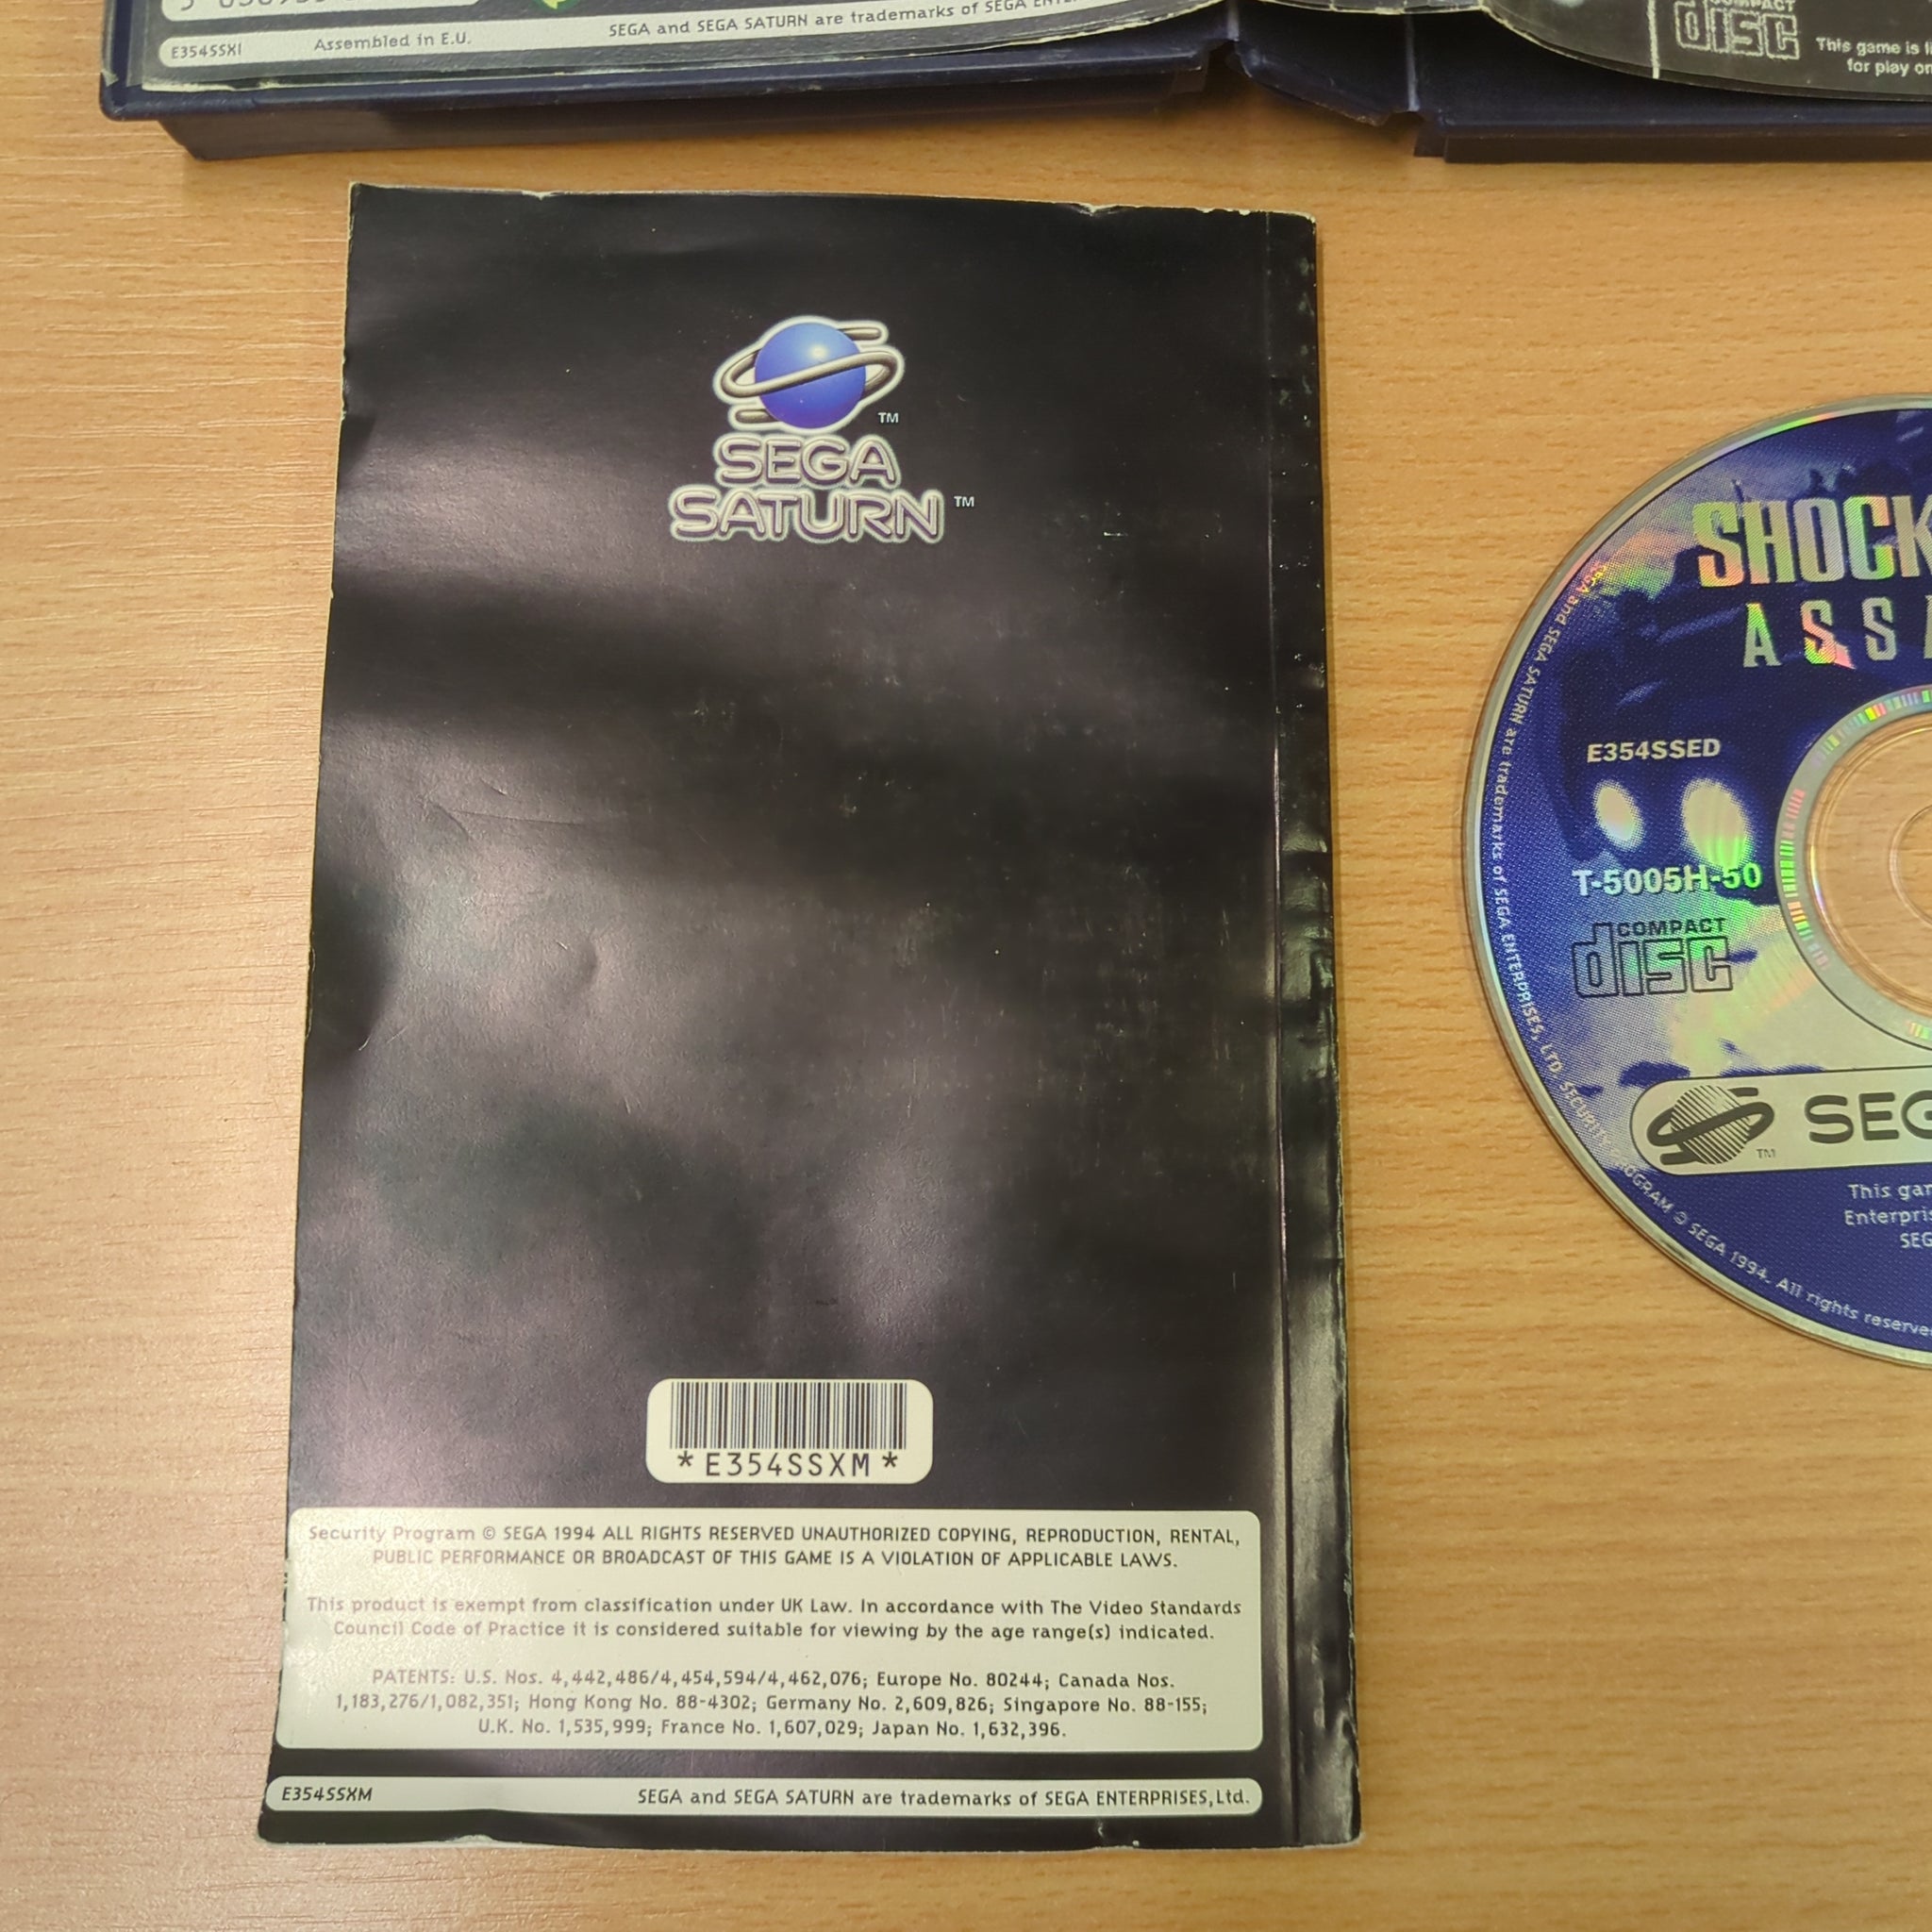 Shockwave Assault Sega Saturn game